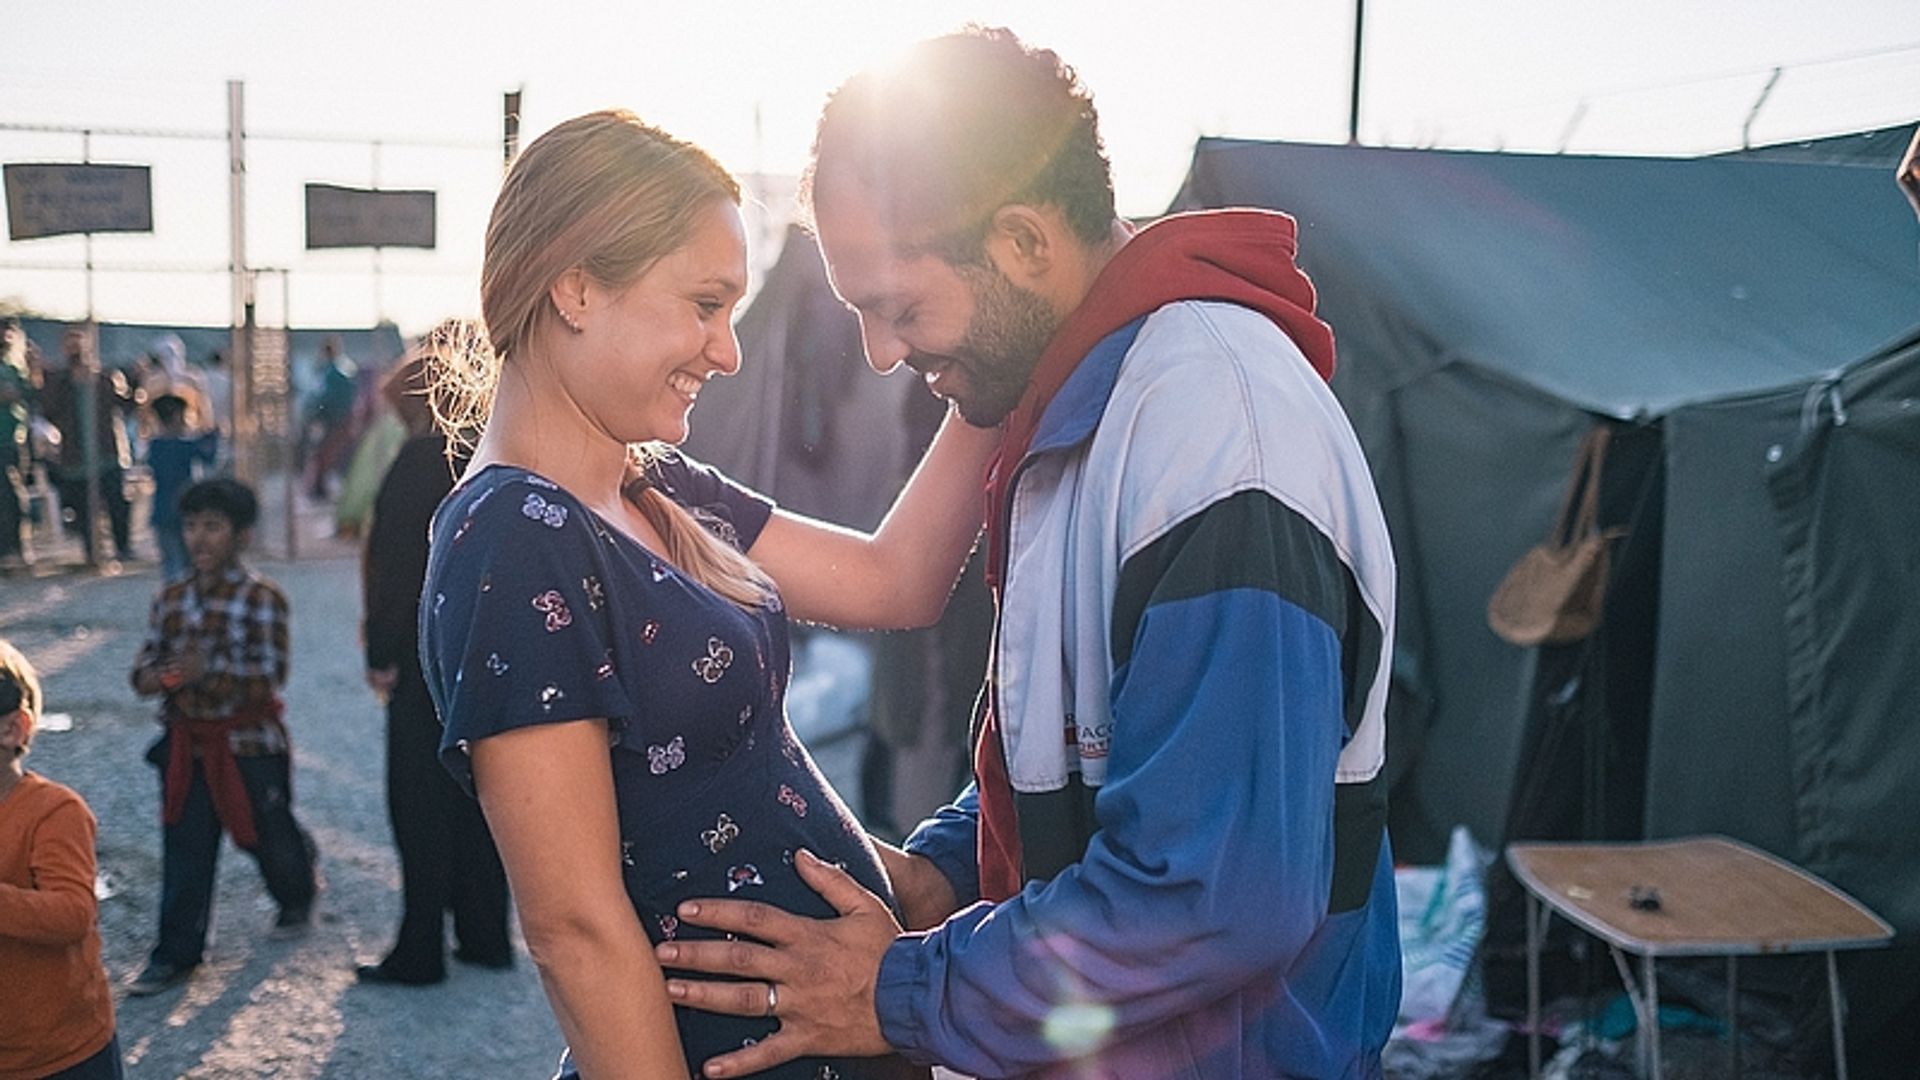 Kijk ook: Film 'Rafaël' over onmogelijke liefde in vluchtelingencrisis